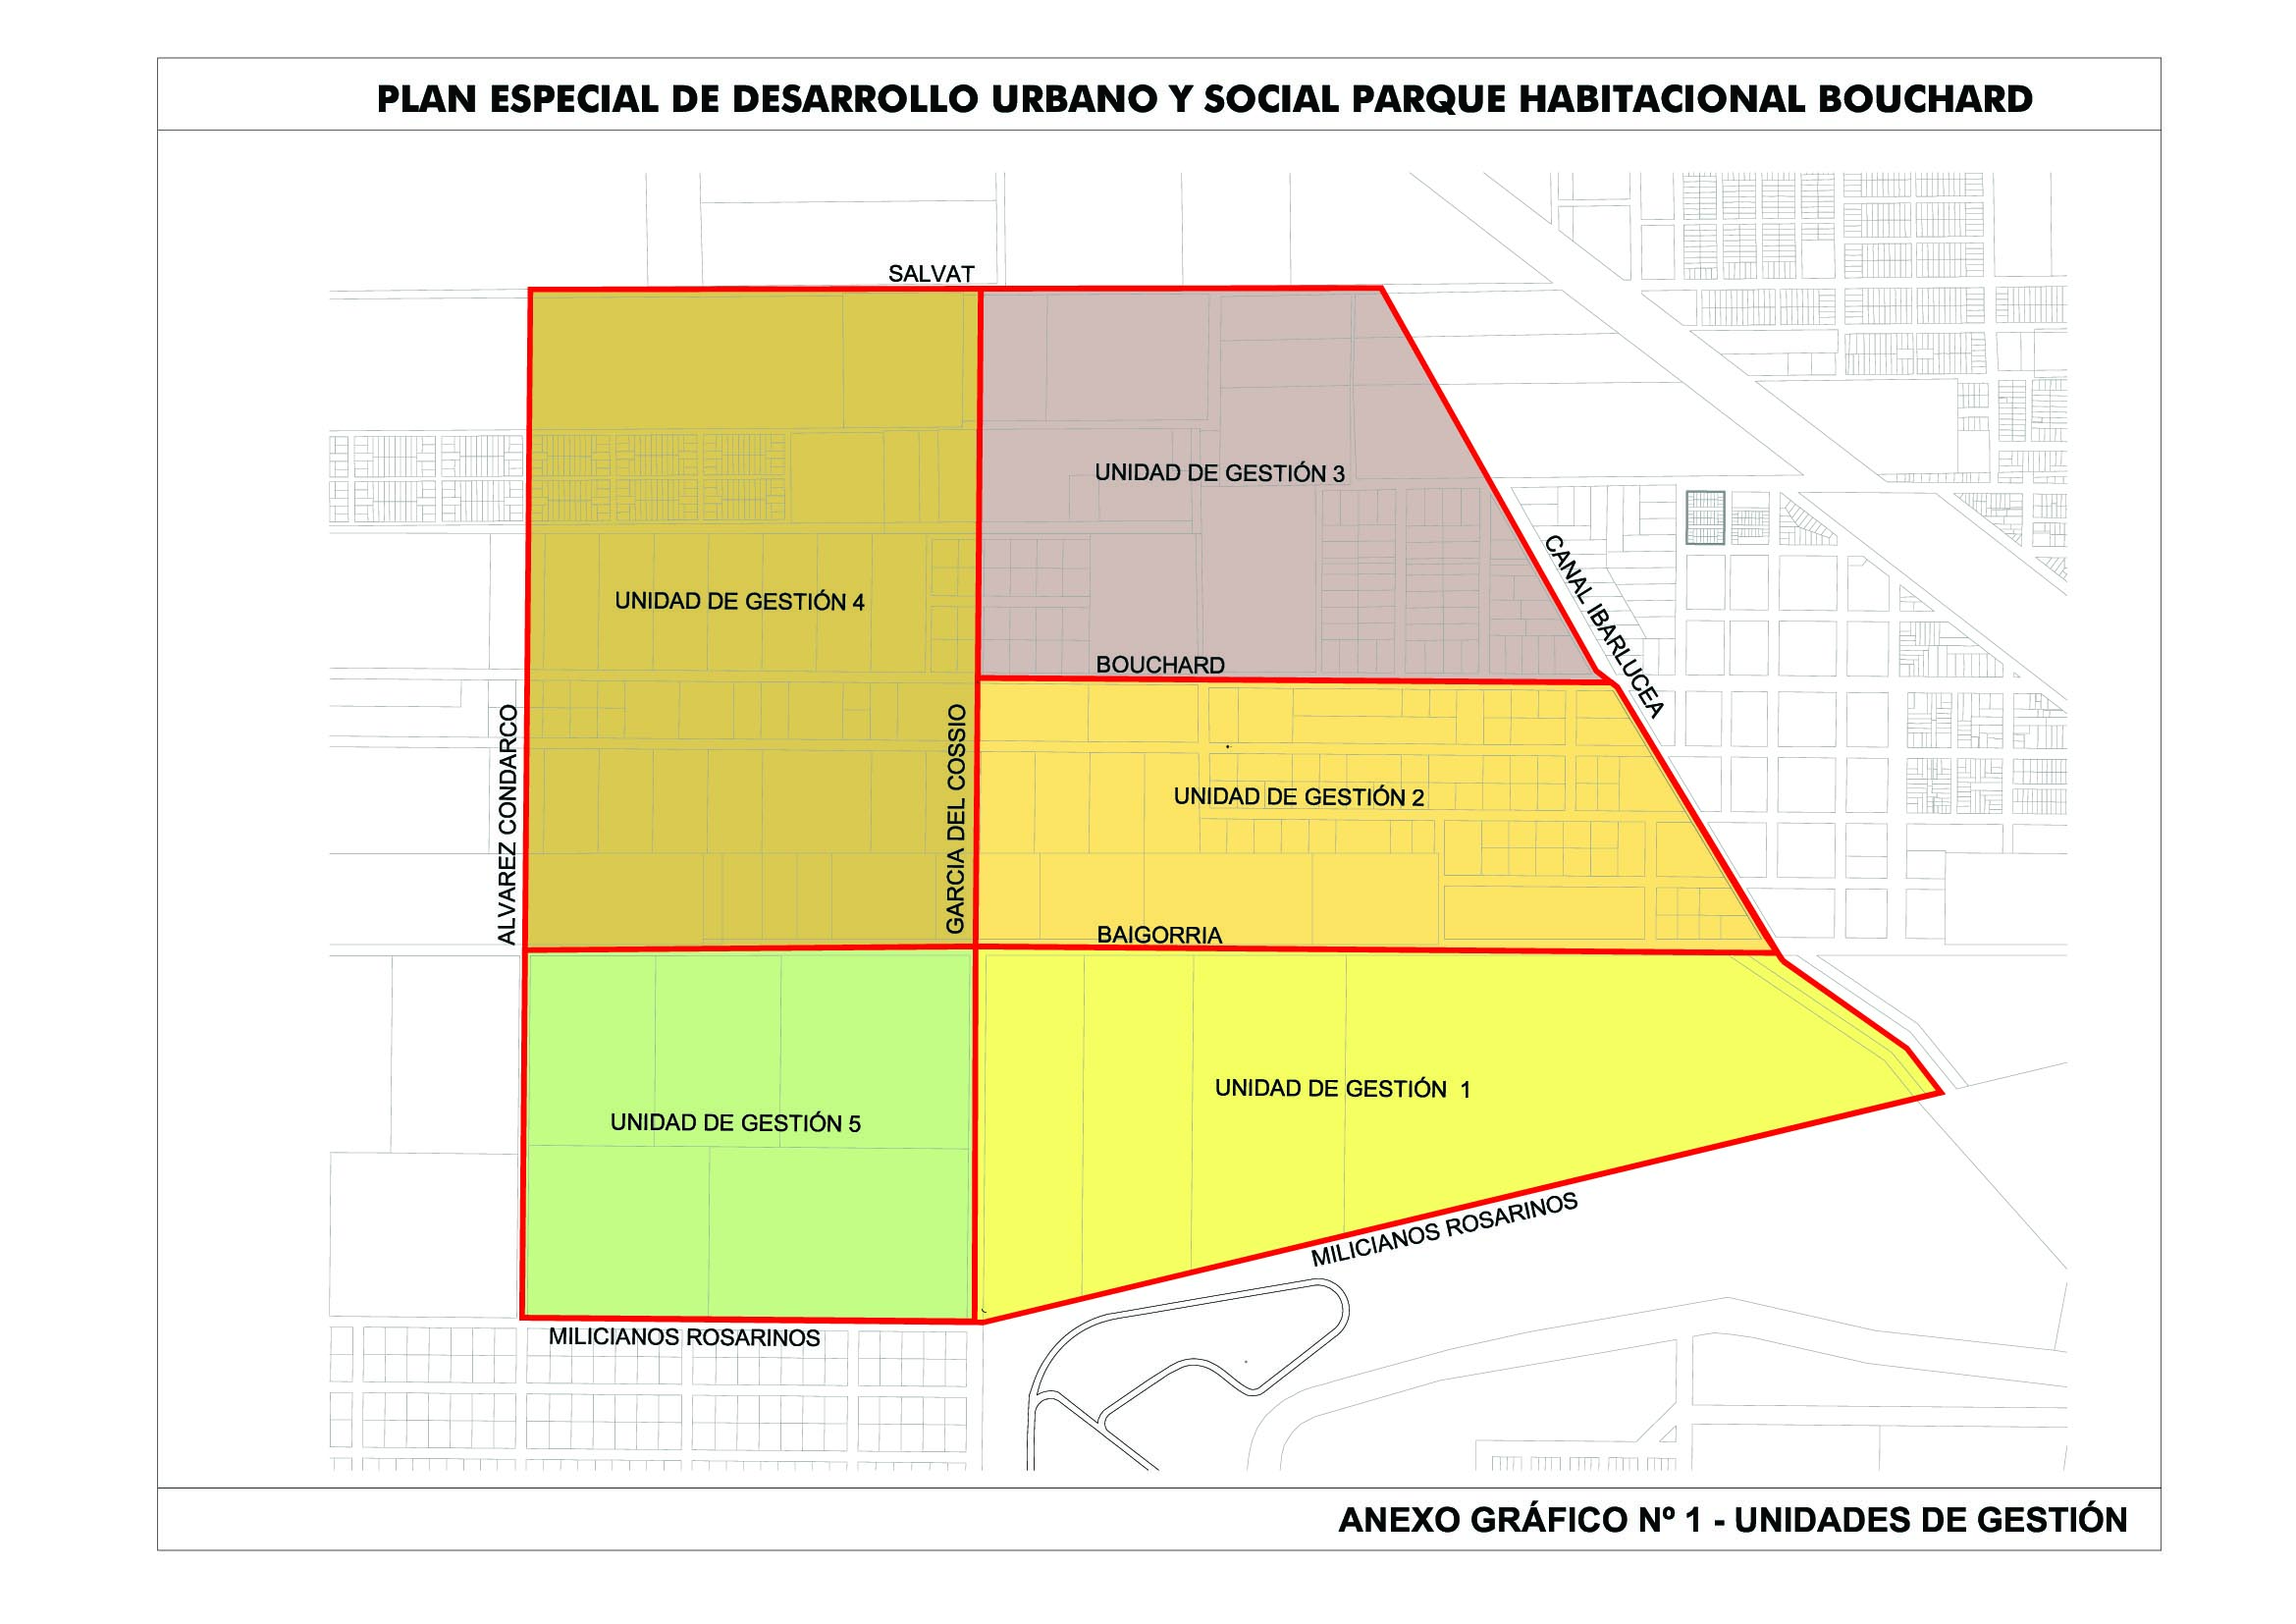 8.61. “plan especial de desarrollo urbano y  social parque habitacional bouchard”